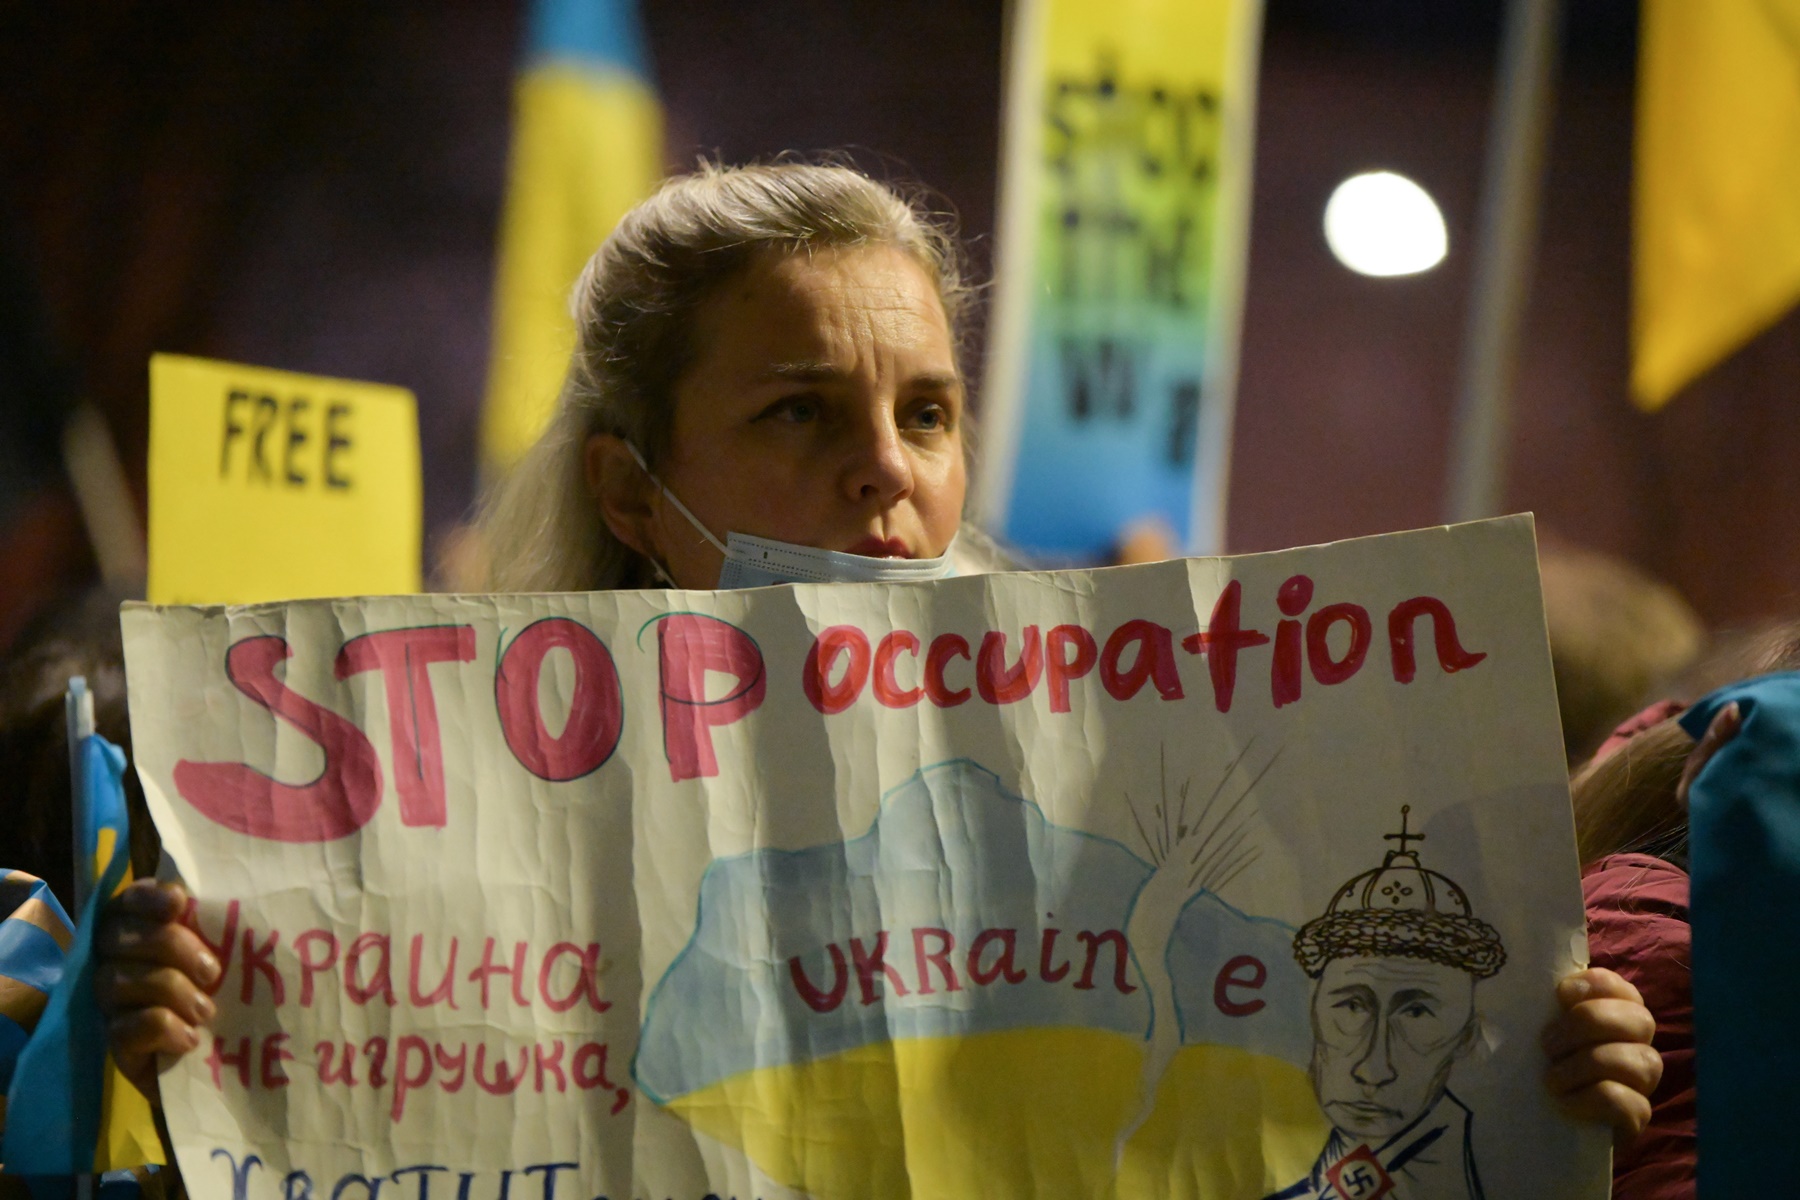 Κυρώσεις στη Ρωσία: Αποφασιστική απάντηση ΕΕ, ΗΠΑ και άλλων χωρών της Δύσης